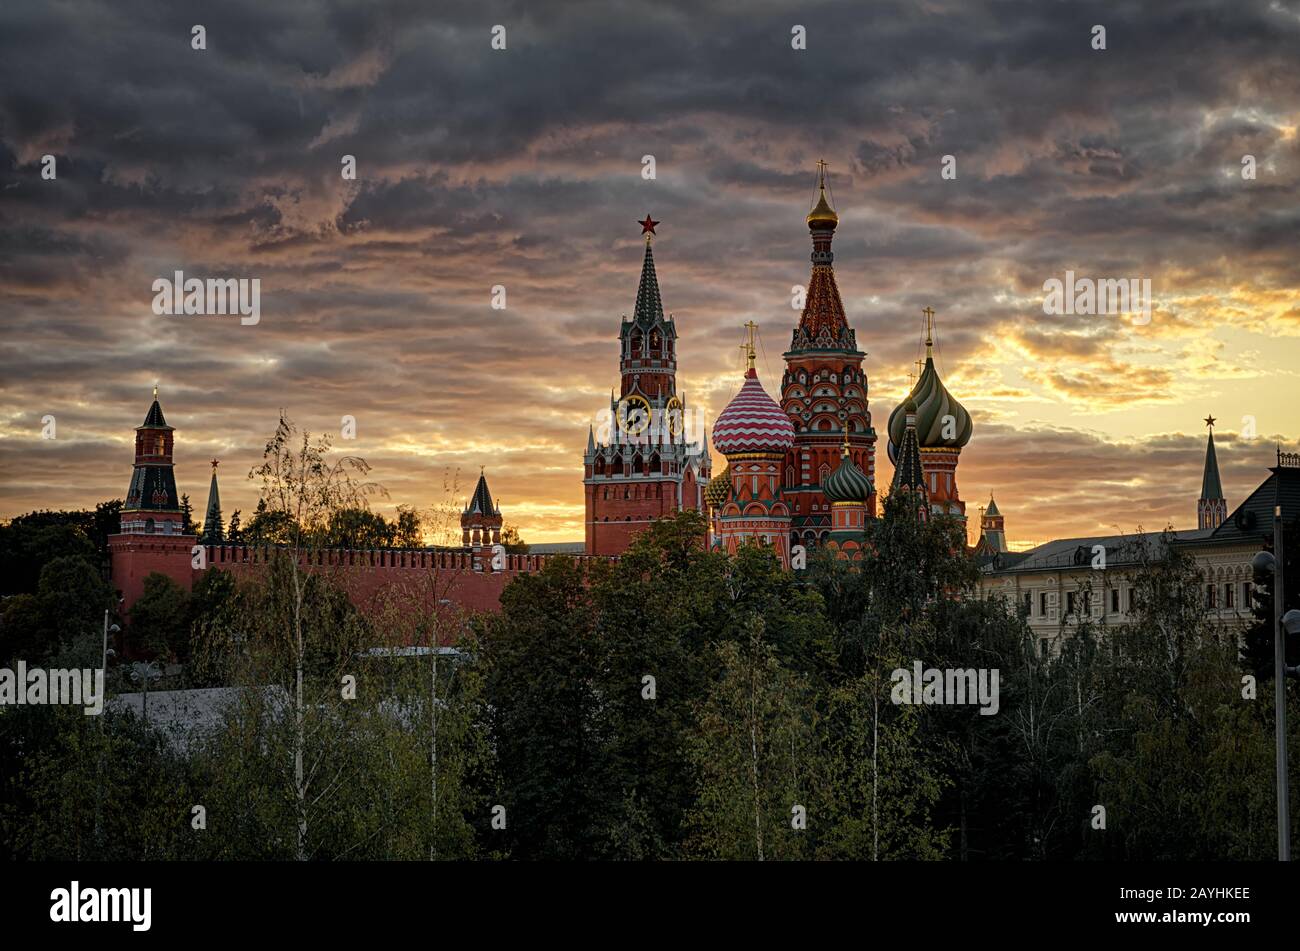 Moskauer Kreml und St. Basil's Cathedral bei Sonnenuntergang, Russland. Es ist die wichtigsten Touristenattraktionen Moskaus. Wunderschönes Panorama auf die Wahrzeichen Moskaus in Summe Stockfoto